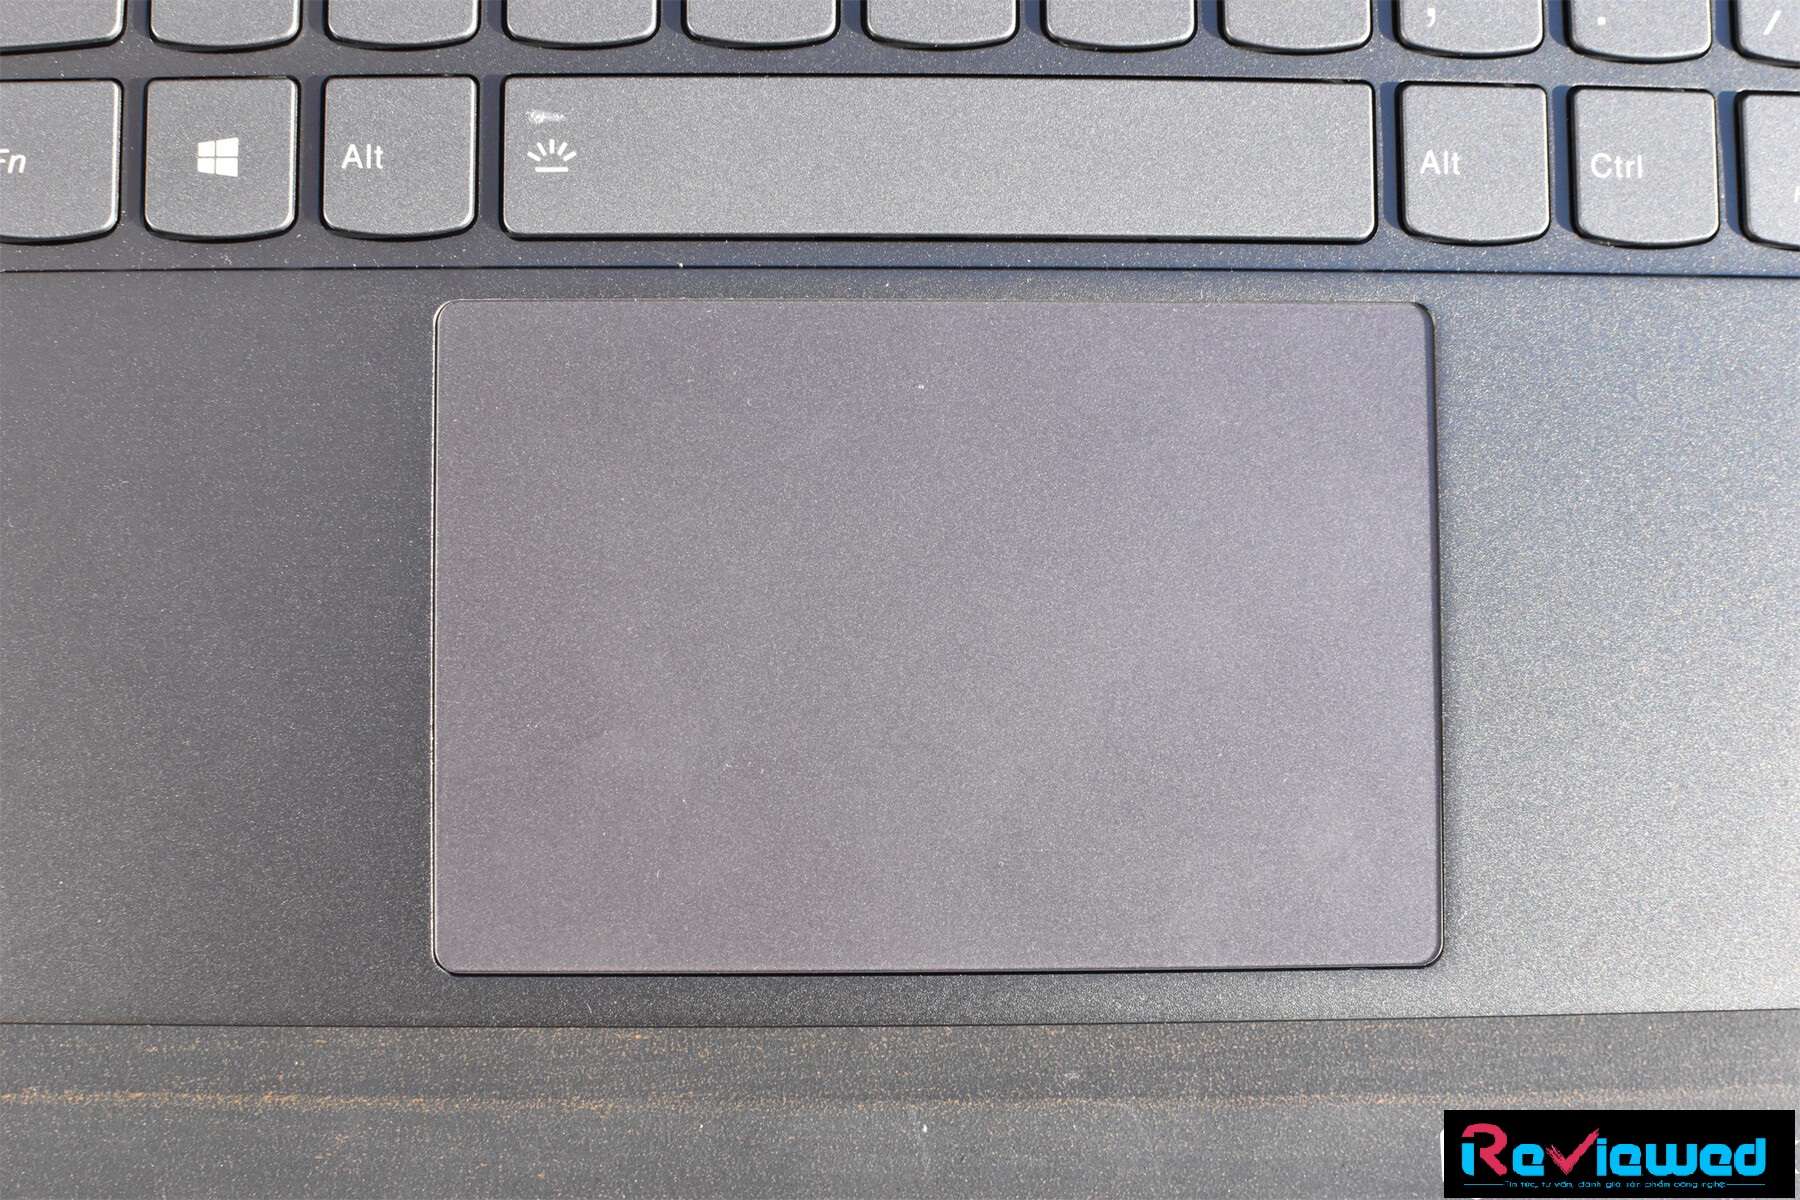 Đánh giá laptop Lenovo Ideapad 730S: Siêu di động, siêu mỏng nhẹ, Chuyên trang tư vấn laptop